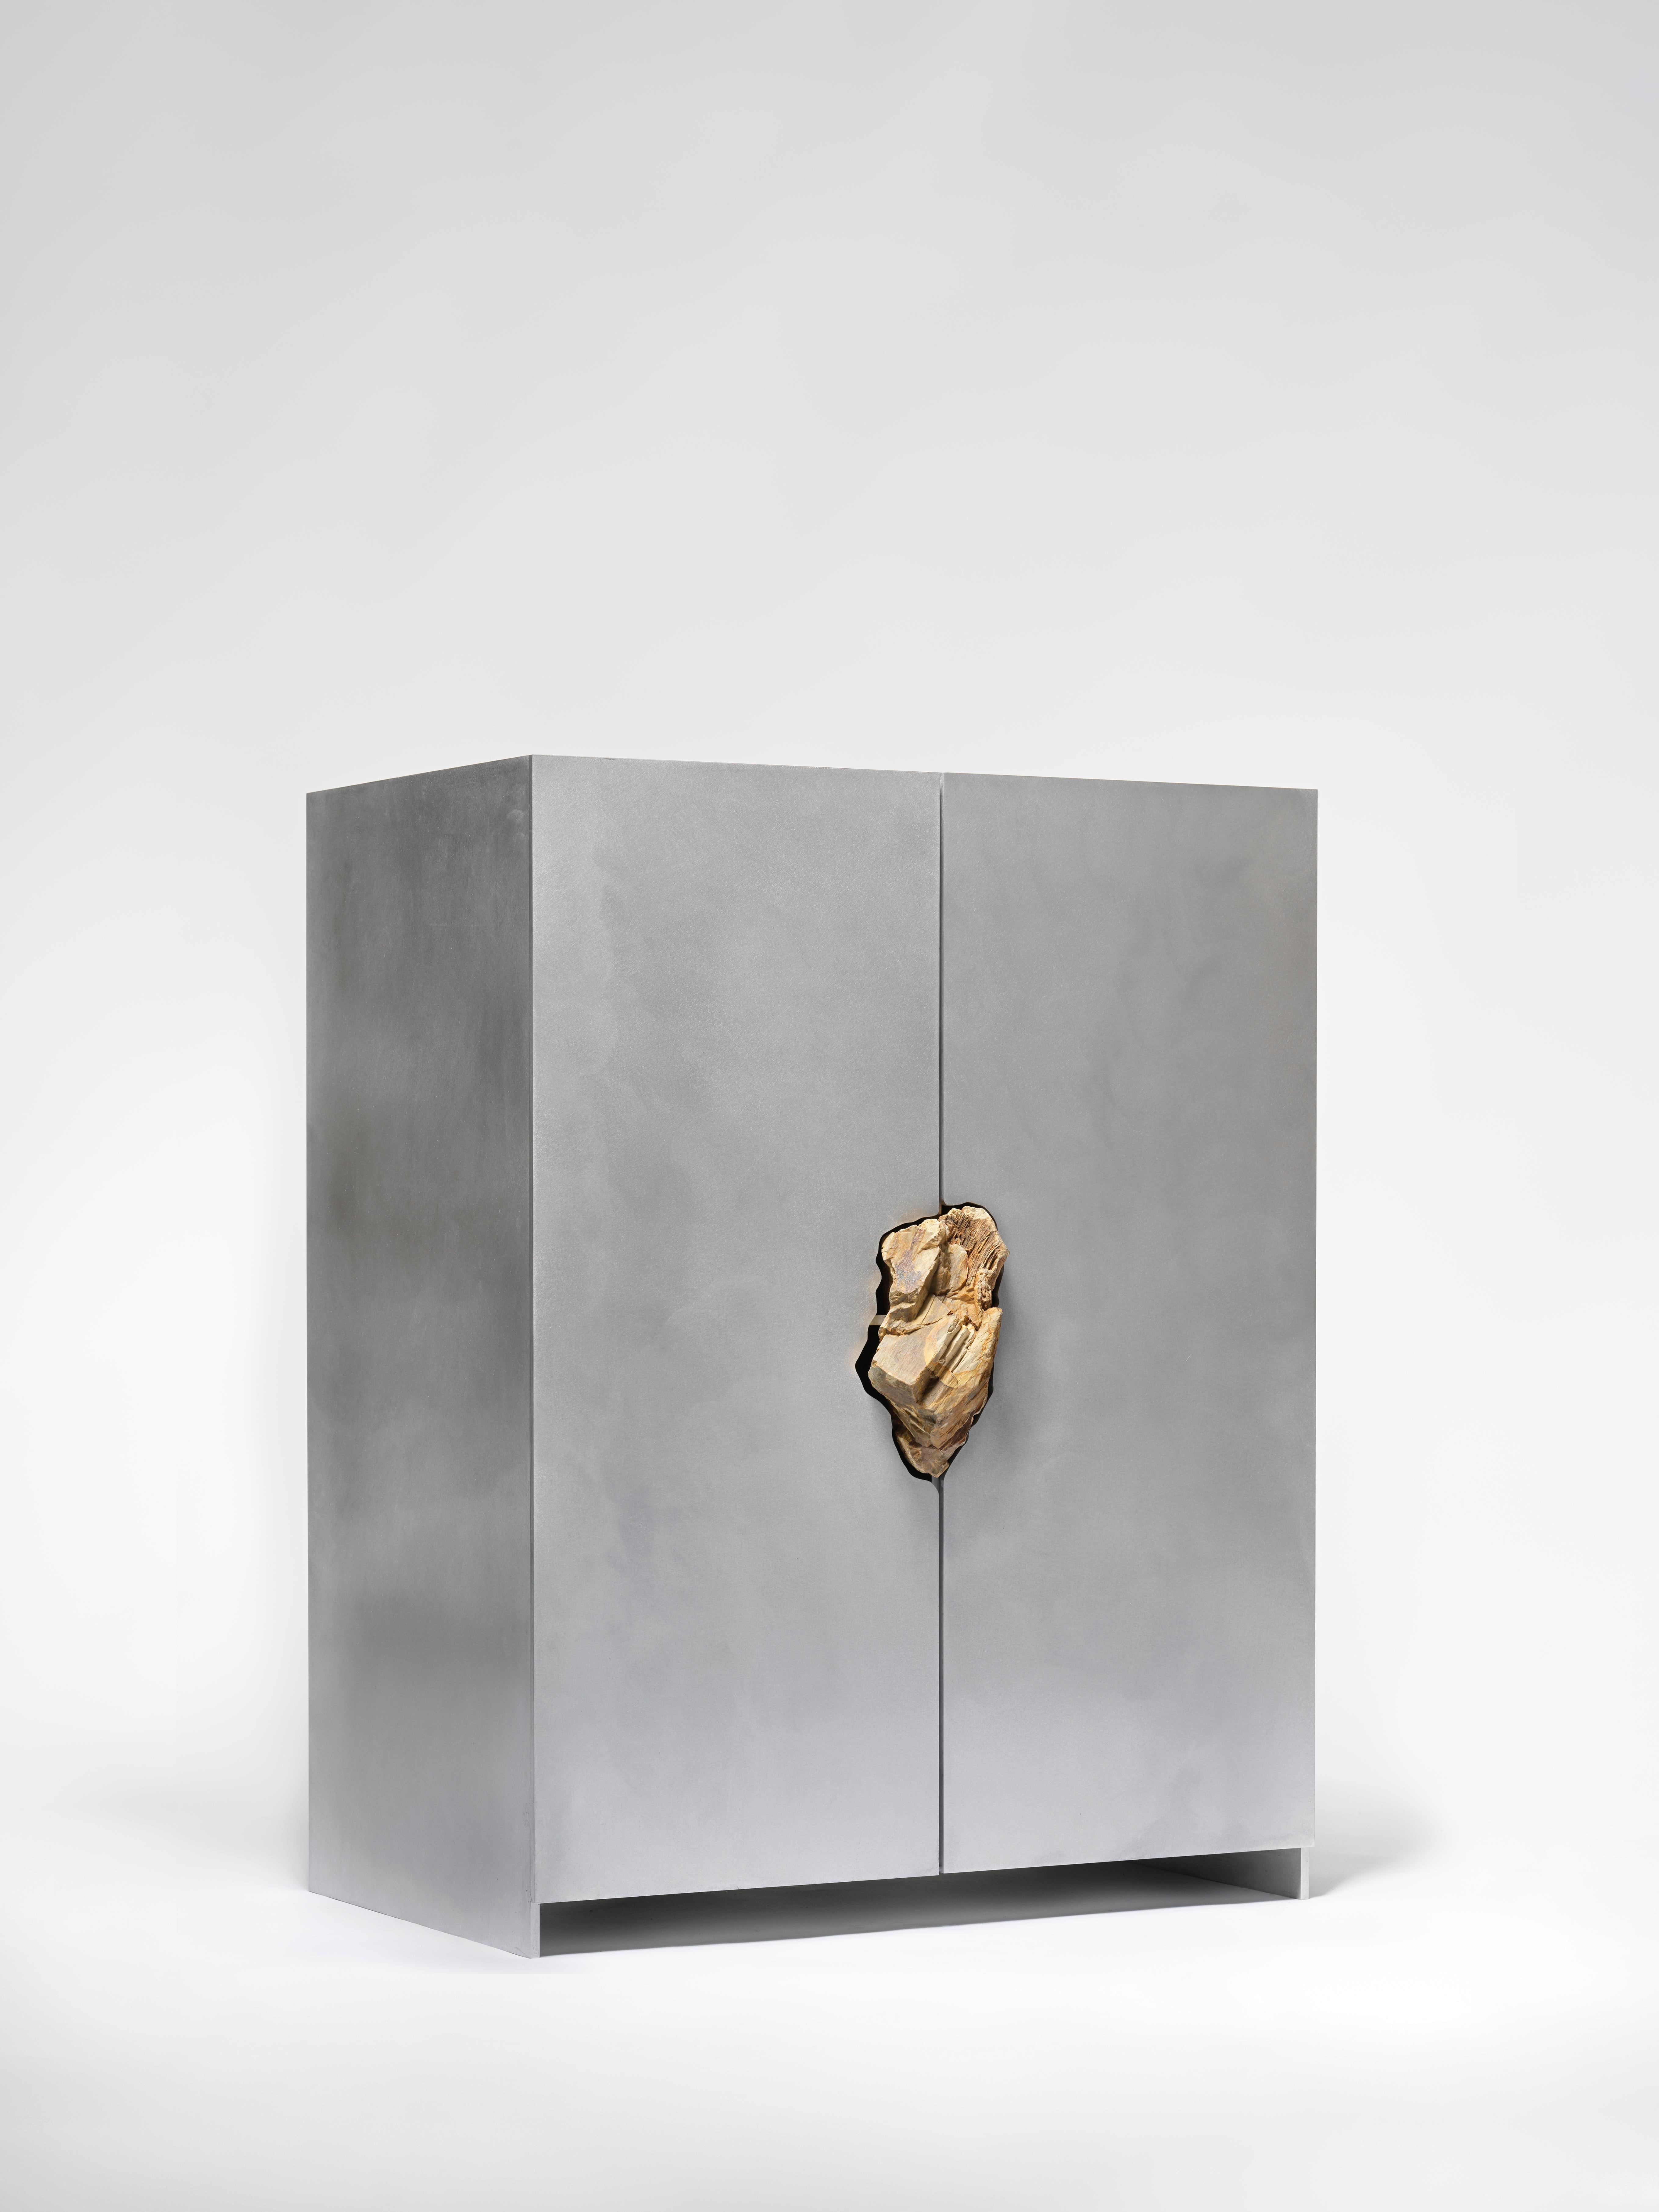 Kabinett mit versteinerter Eiche von Pierre De Valck.
Abmessungen: B 70 x T 45 x H 96 cm.
MATERIALIEN: Gewachstes Aluminium mit versteinerter Eiche
Gewicht: 65 kg.
Jedes Stück ist einzigartig.

Pierre De Valck (1991), geboren in Brüssel, ist ein in